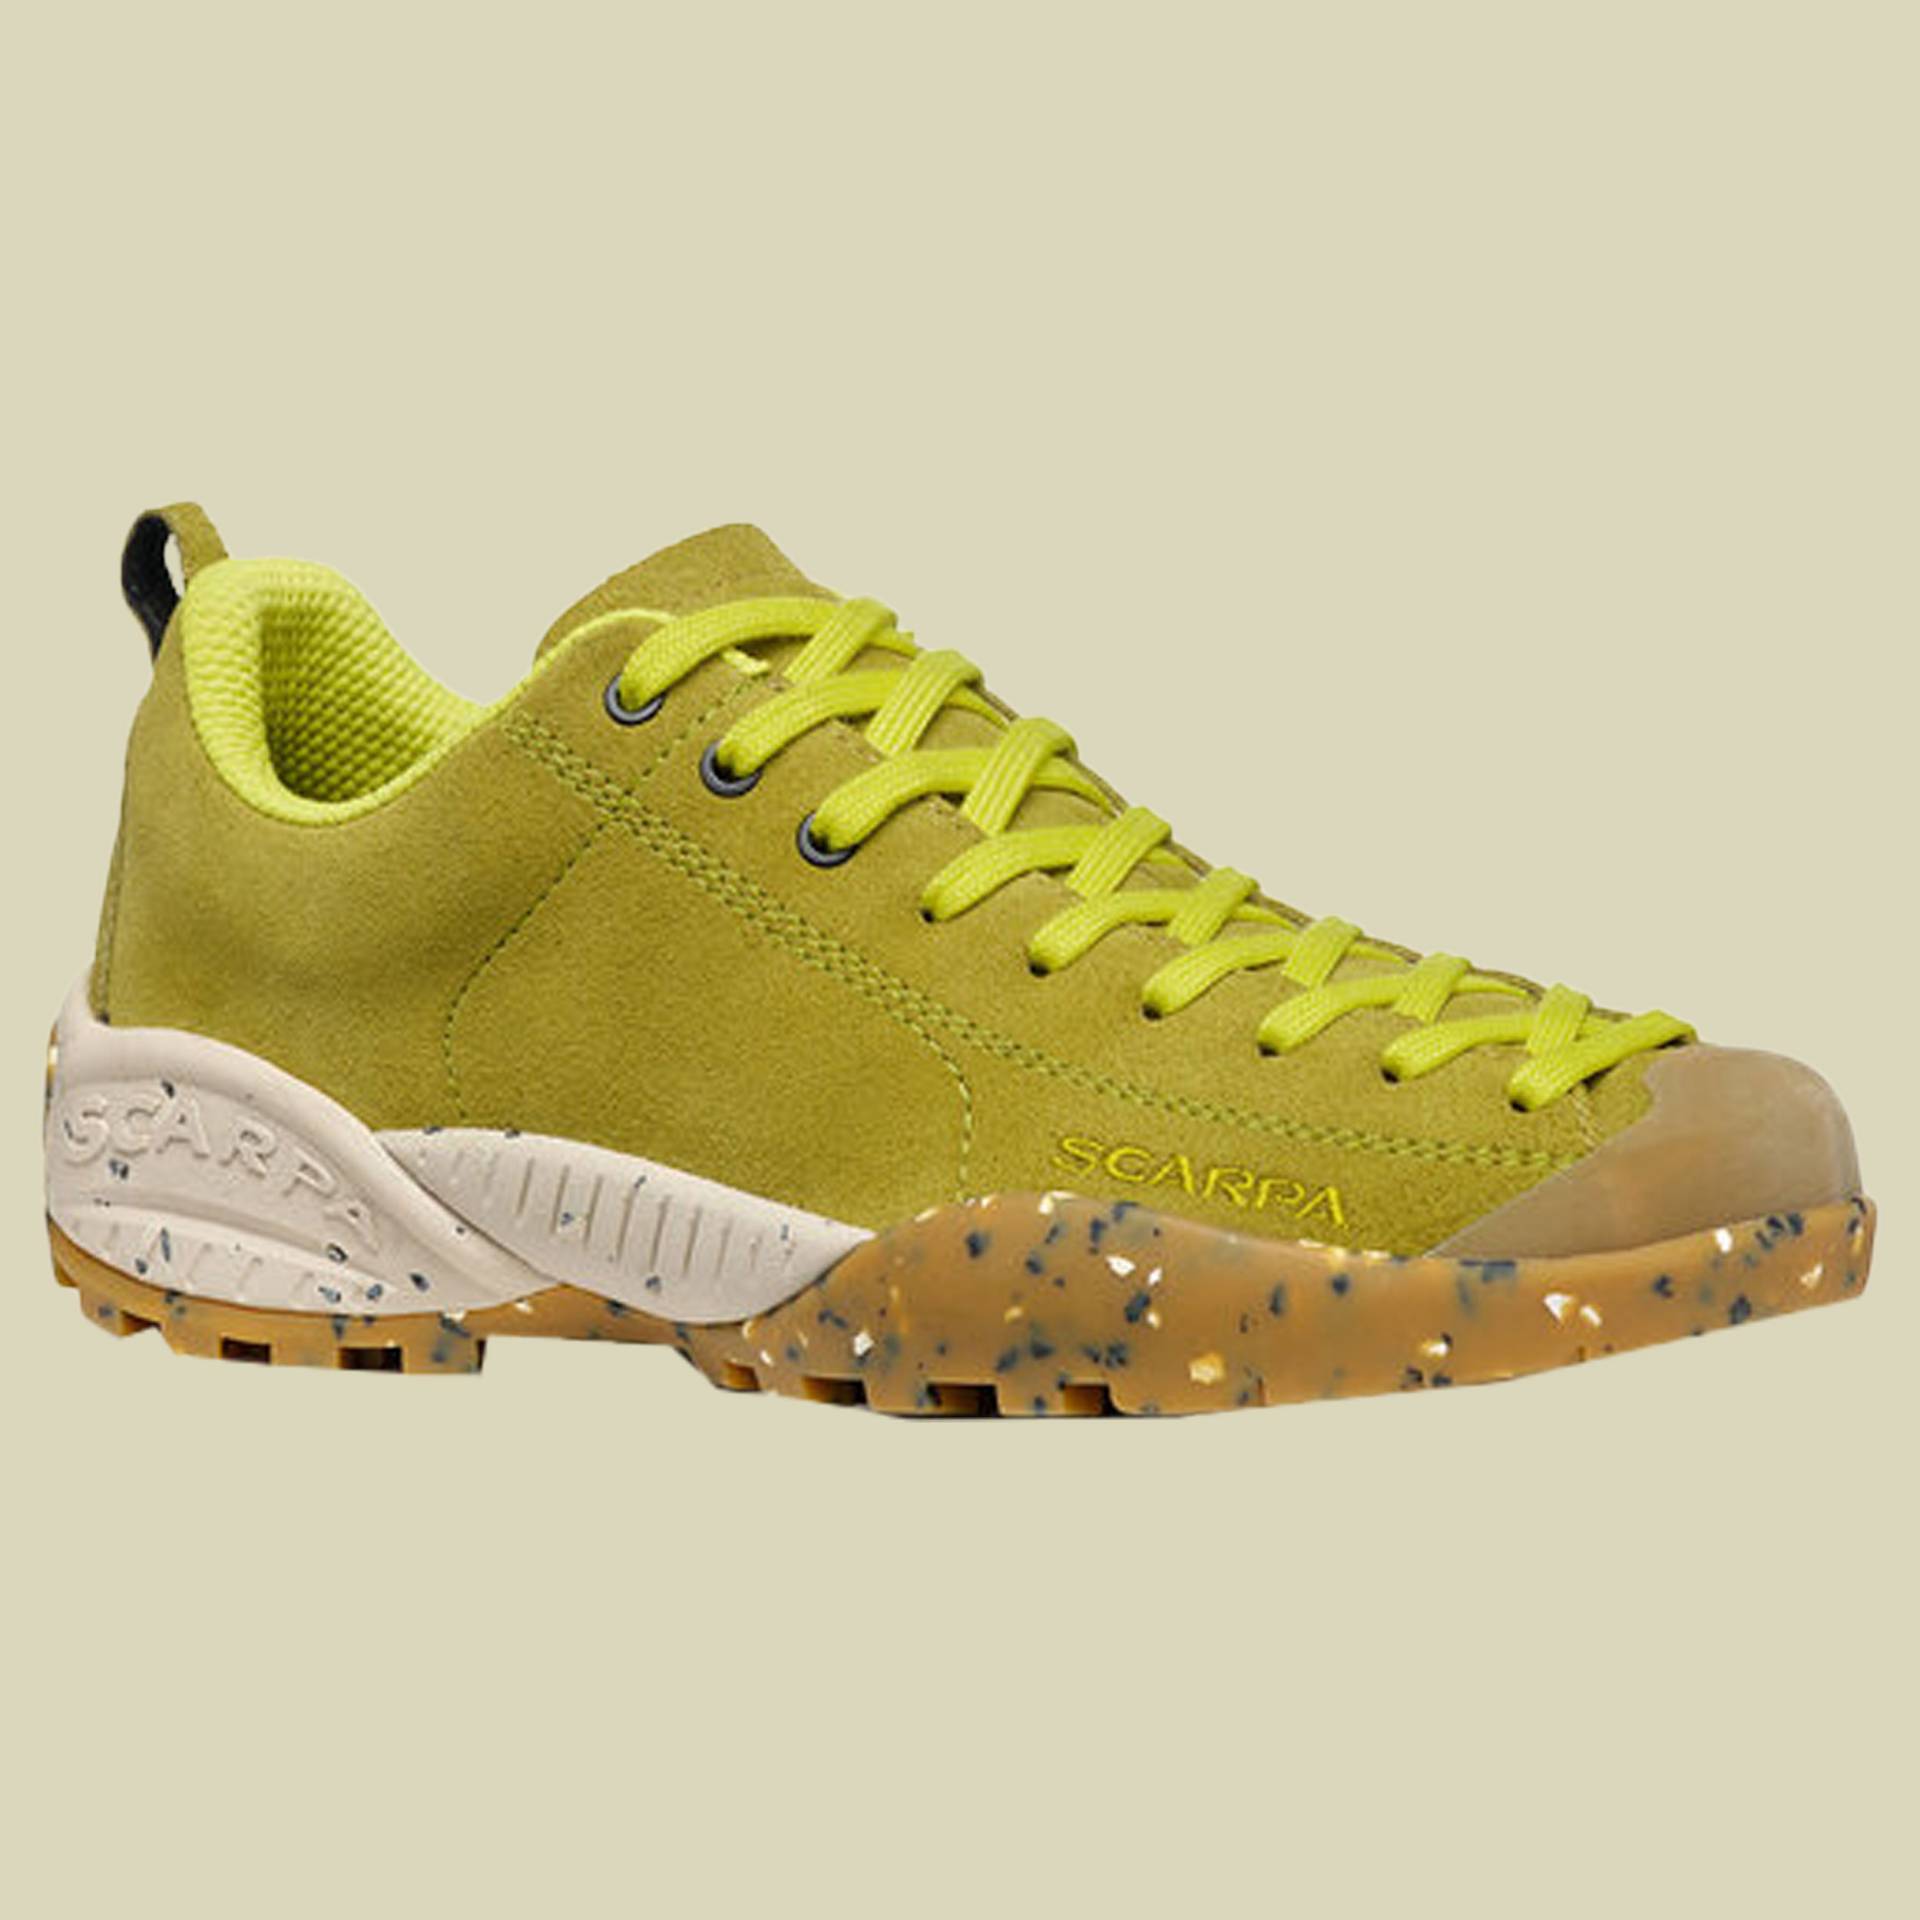 Mojito Planet Suede Women Größe 41 Farbe golden lime von Scarpa Schuhe